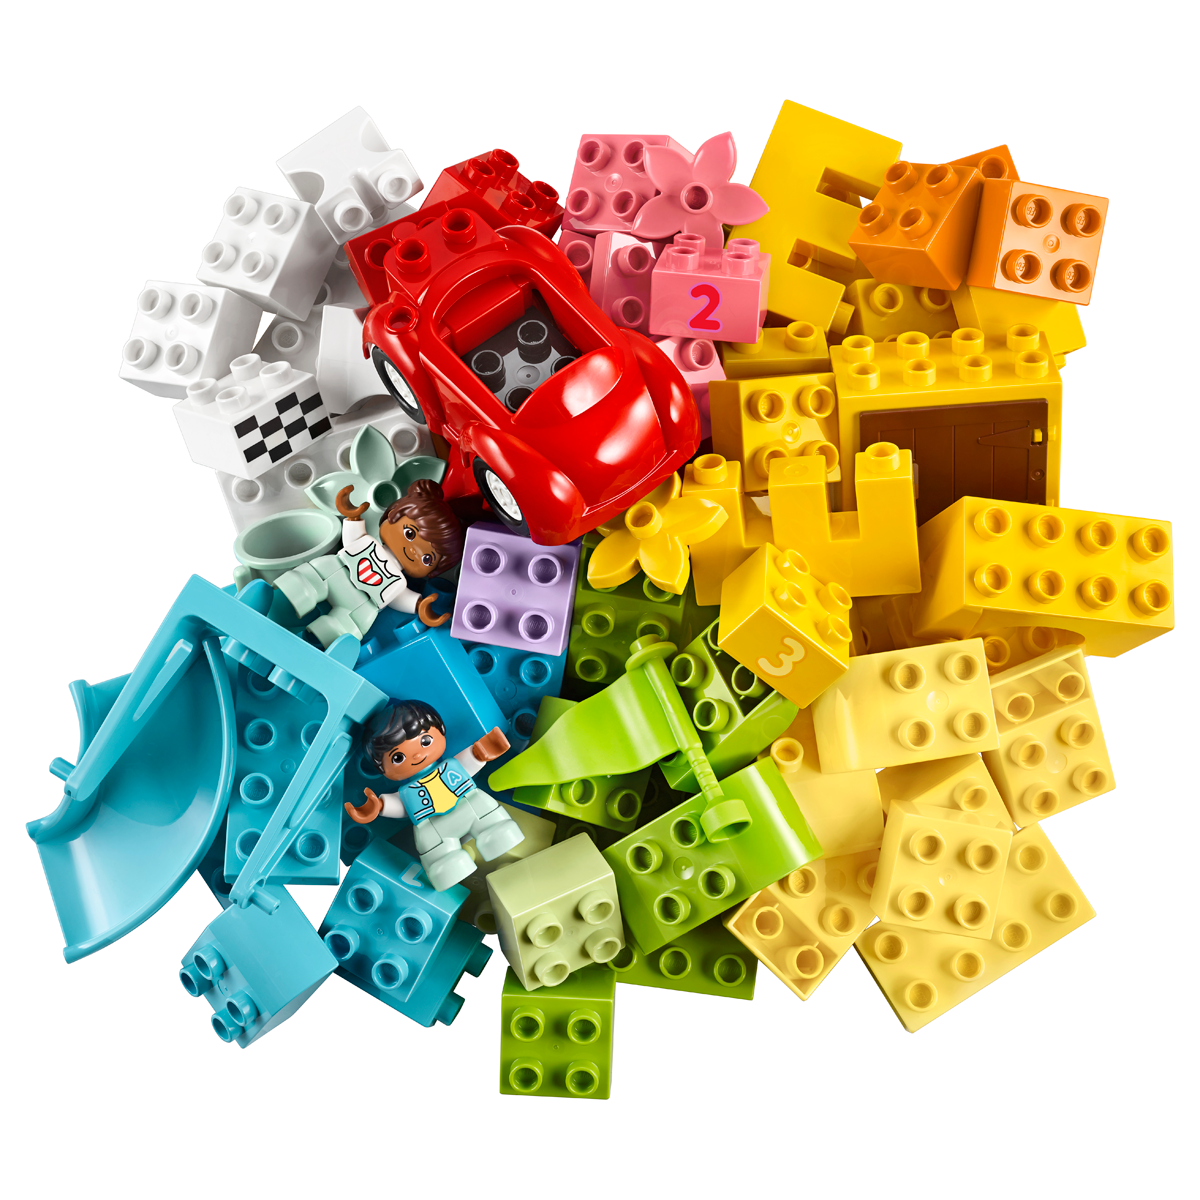 LEGO DUPLO - Deluxe Brick Box 10914